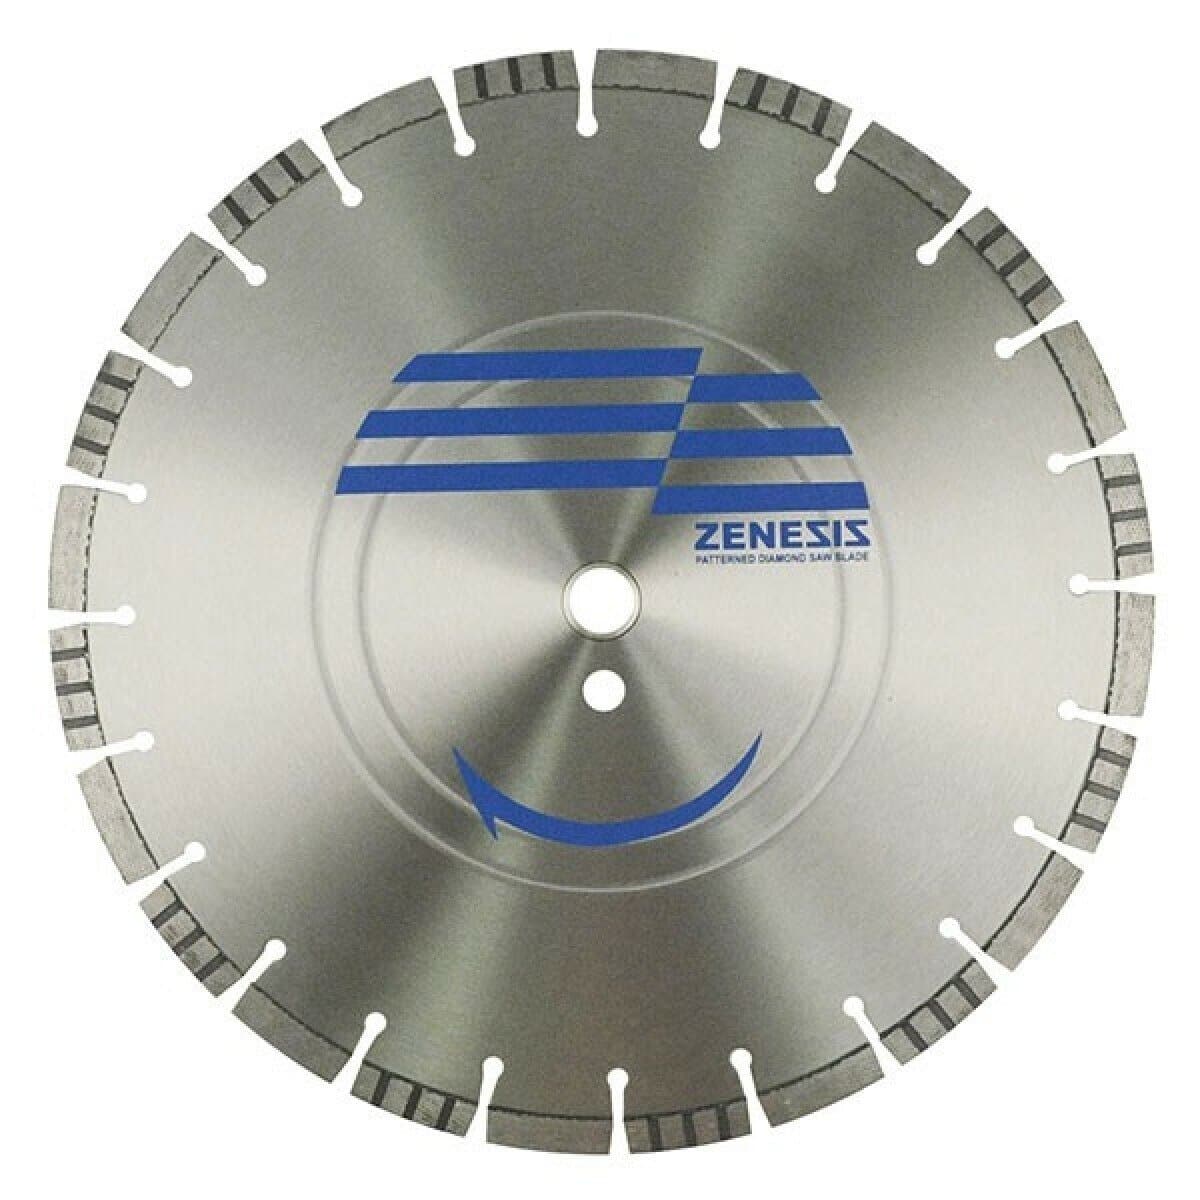 Zenesis General Purpose Blade - Zenesis